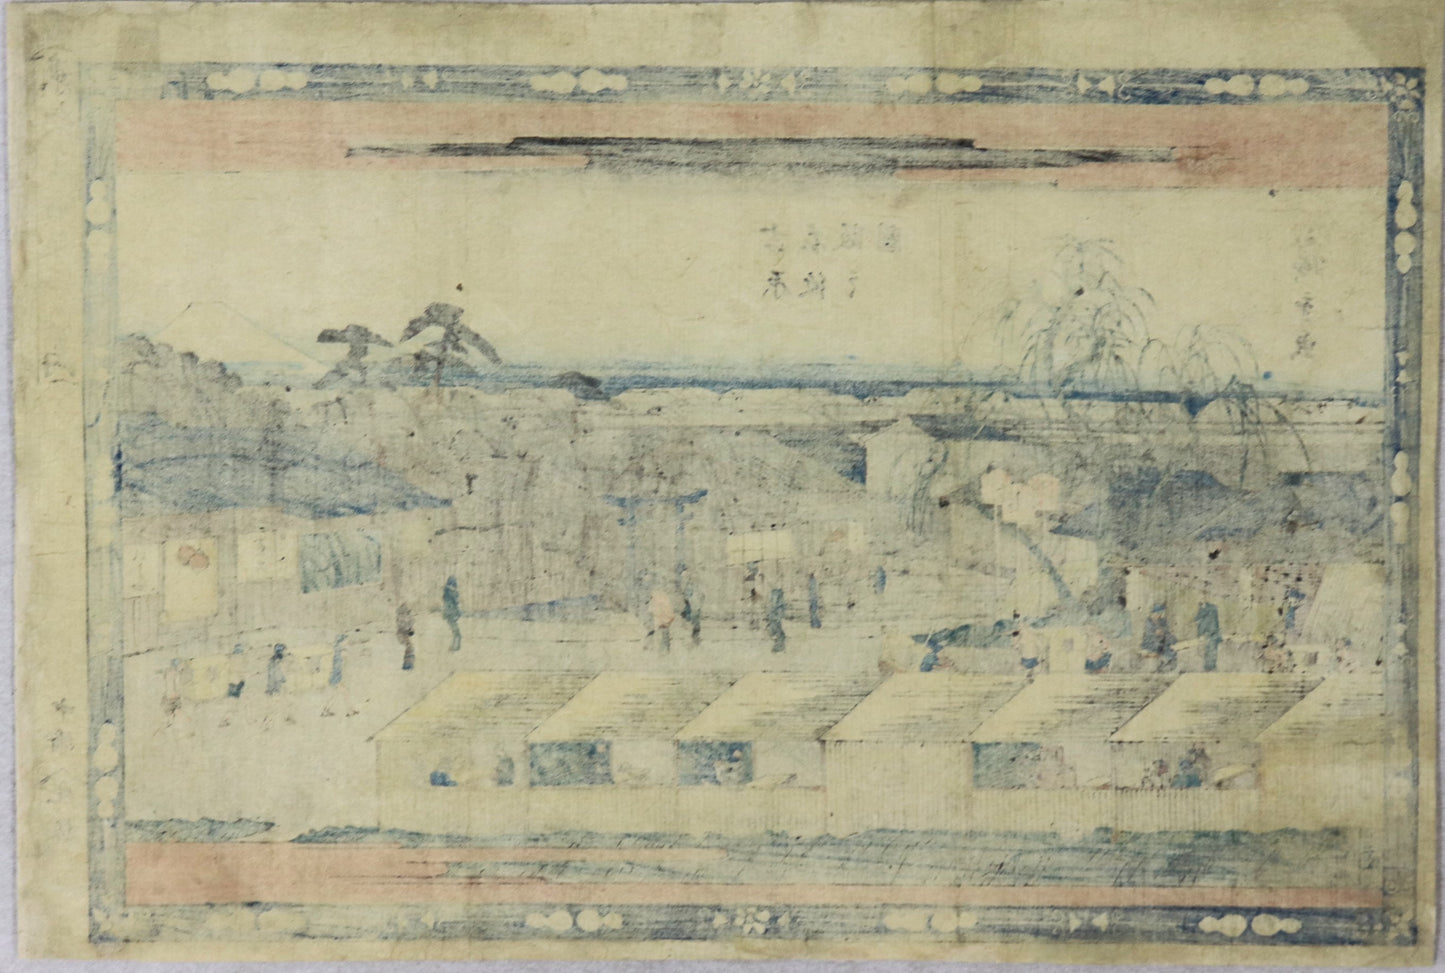 Emonzaka from the series "Famous Hills in the Eastern Capital" by Hiroshige / Emonzaka de la série "Célèbres Collines de la Capitale de l'Est " par Hiroshige ( 1840-1842)